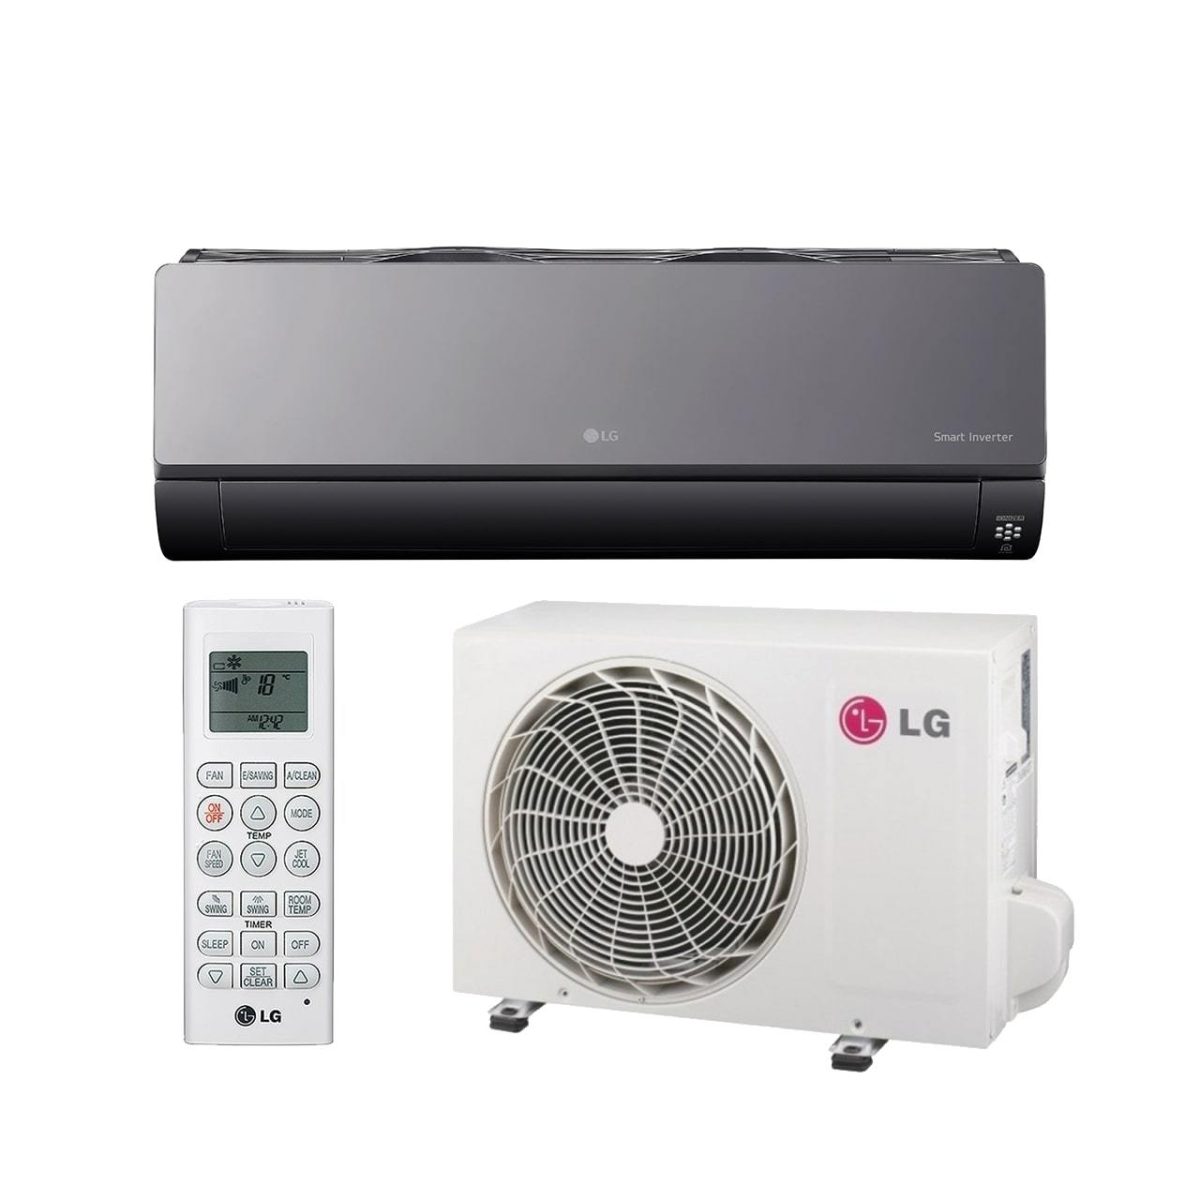 LG Airconditioner Artcool (WIFI) AC12BQ NSJ / AC12BQ 3.5KW